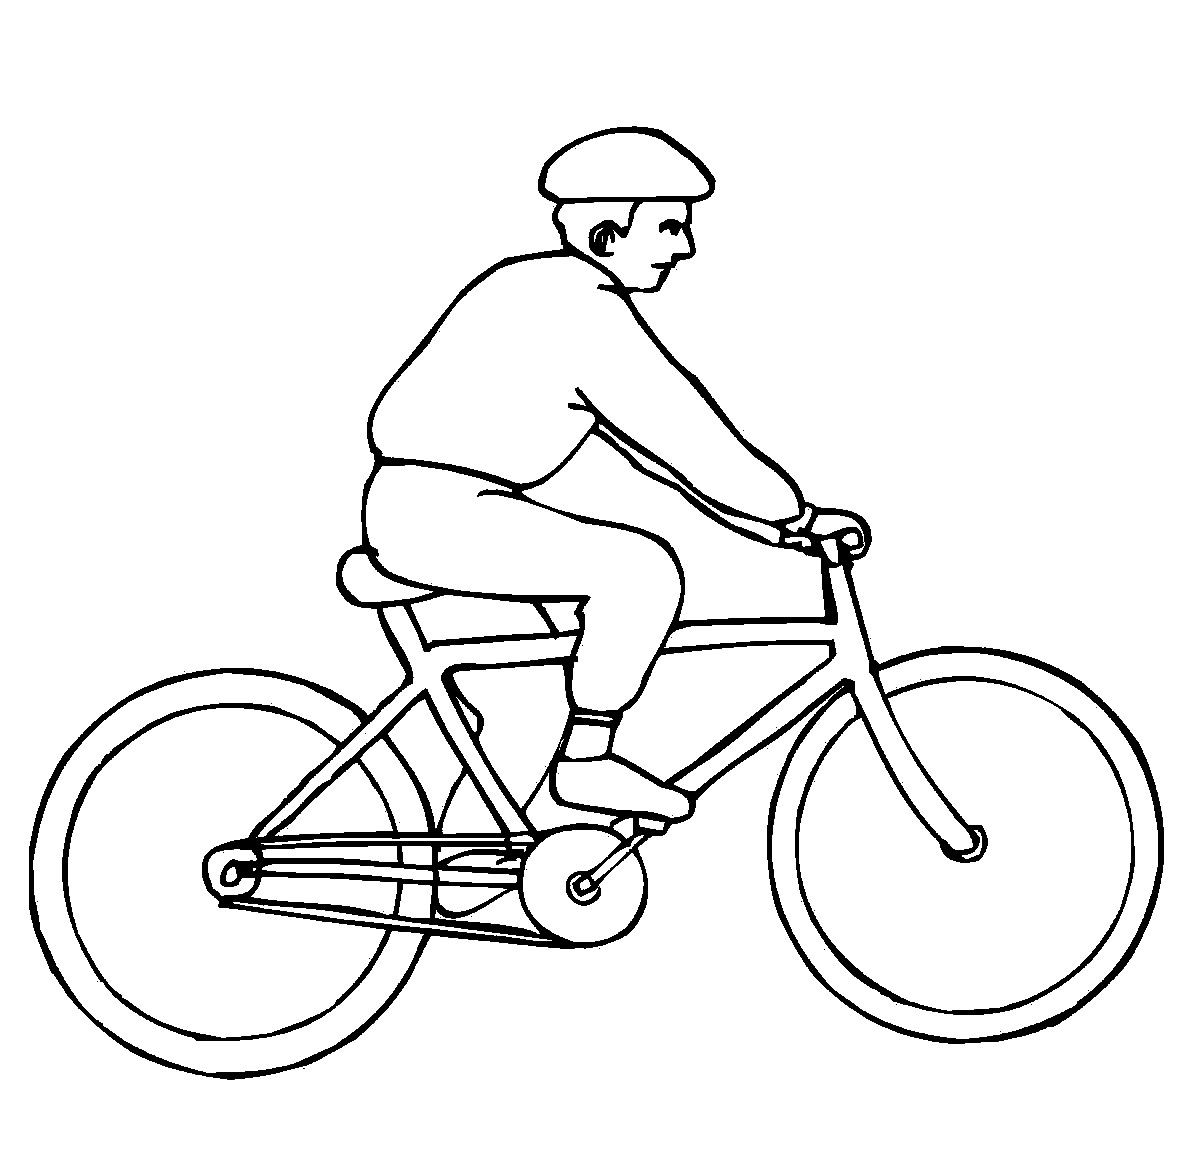 Vẽ xe đạp đơn giản và tô màu cho bé  Dạy bé vẽ  Dạy bé tô màu  Sepeda  Halaman Mewarnai  YouTube